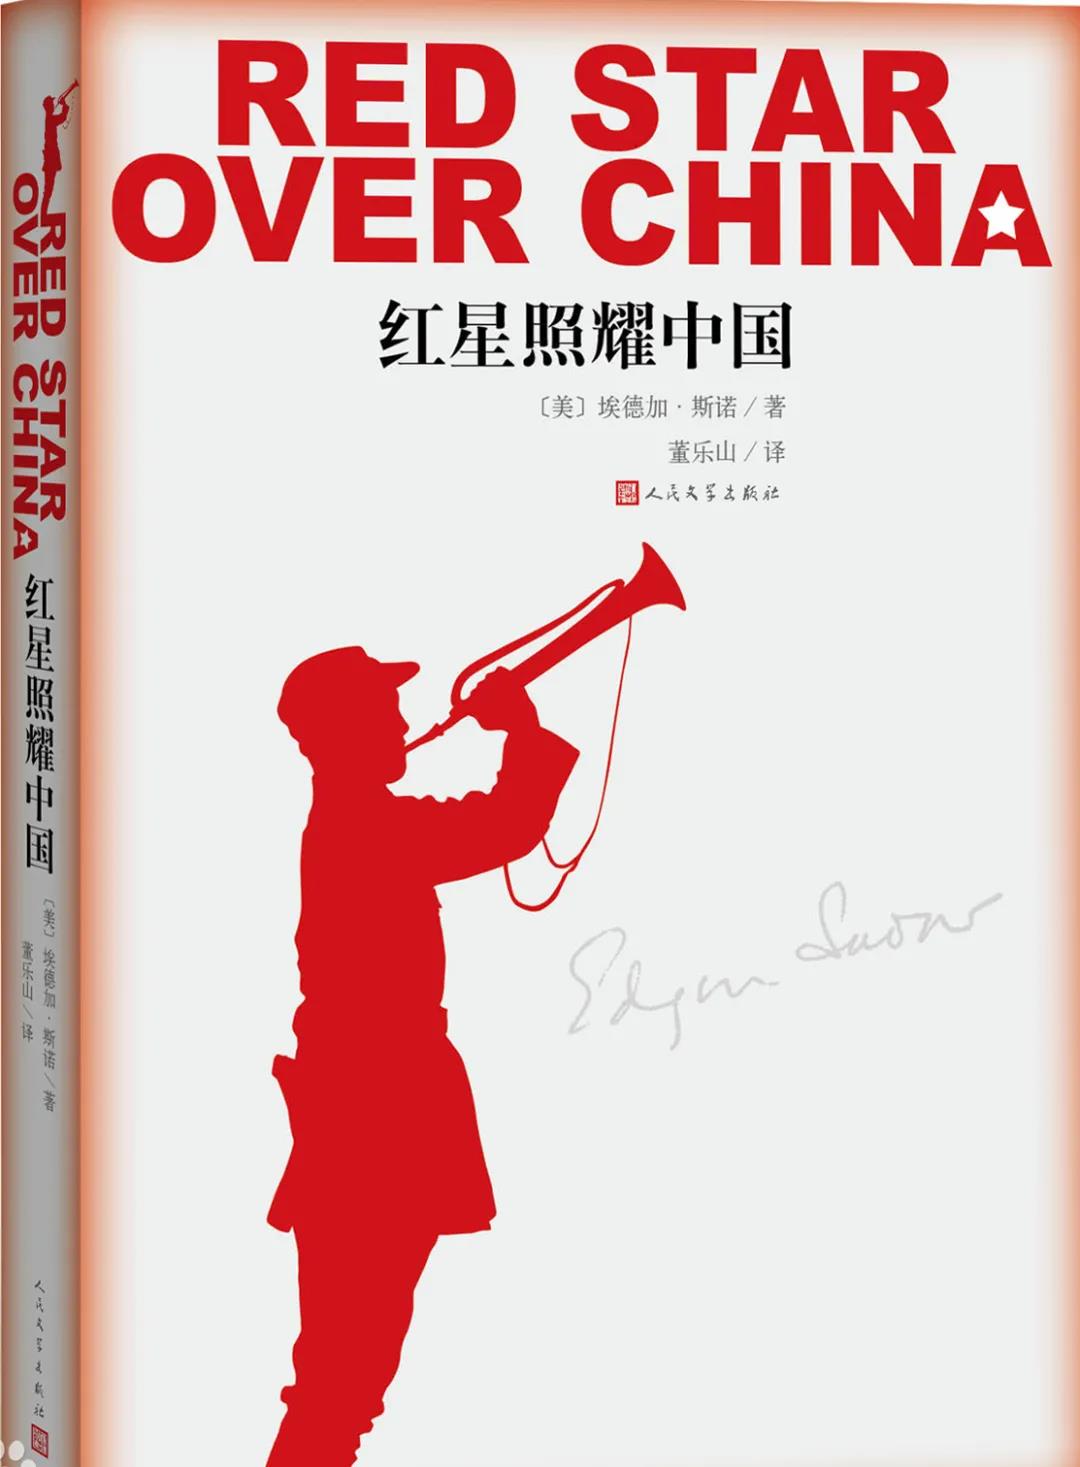 该书真实记录了作者自1936年6月至10月在陕甘宁边区进行实地采访的所见所闻，向全世界真实报道了红色中国、中国工农红军，以及上至红军领袖、将领，下至普通红军士兵的真实情况。